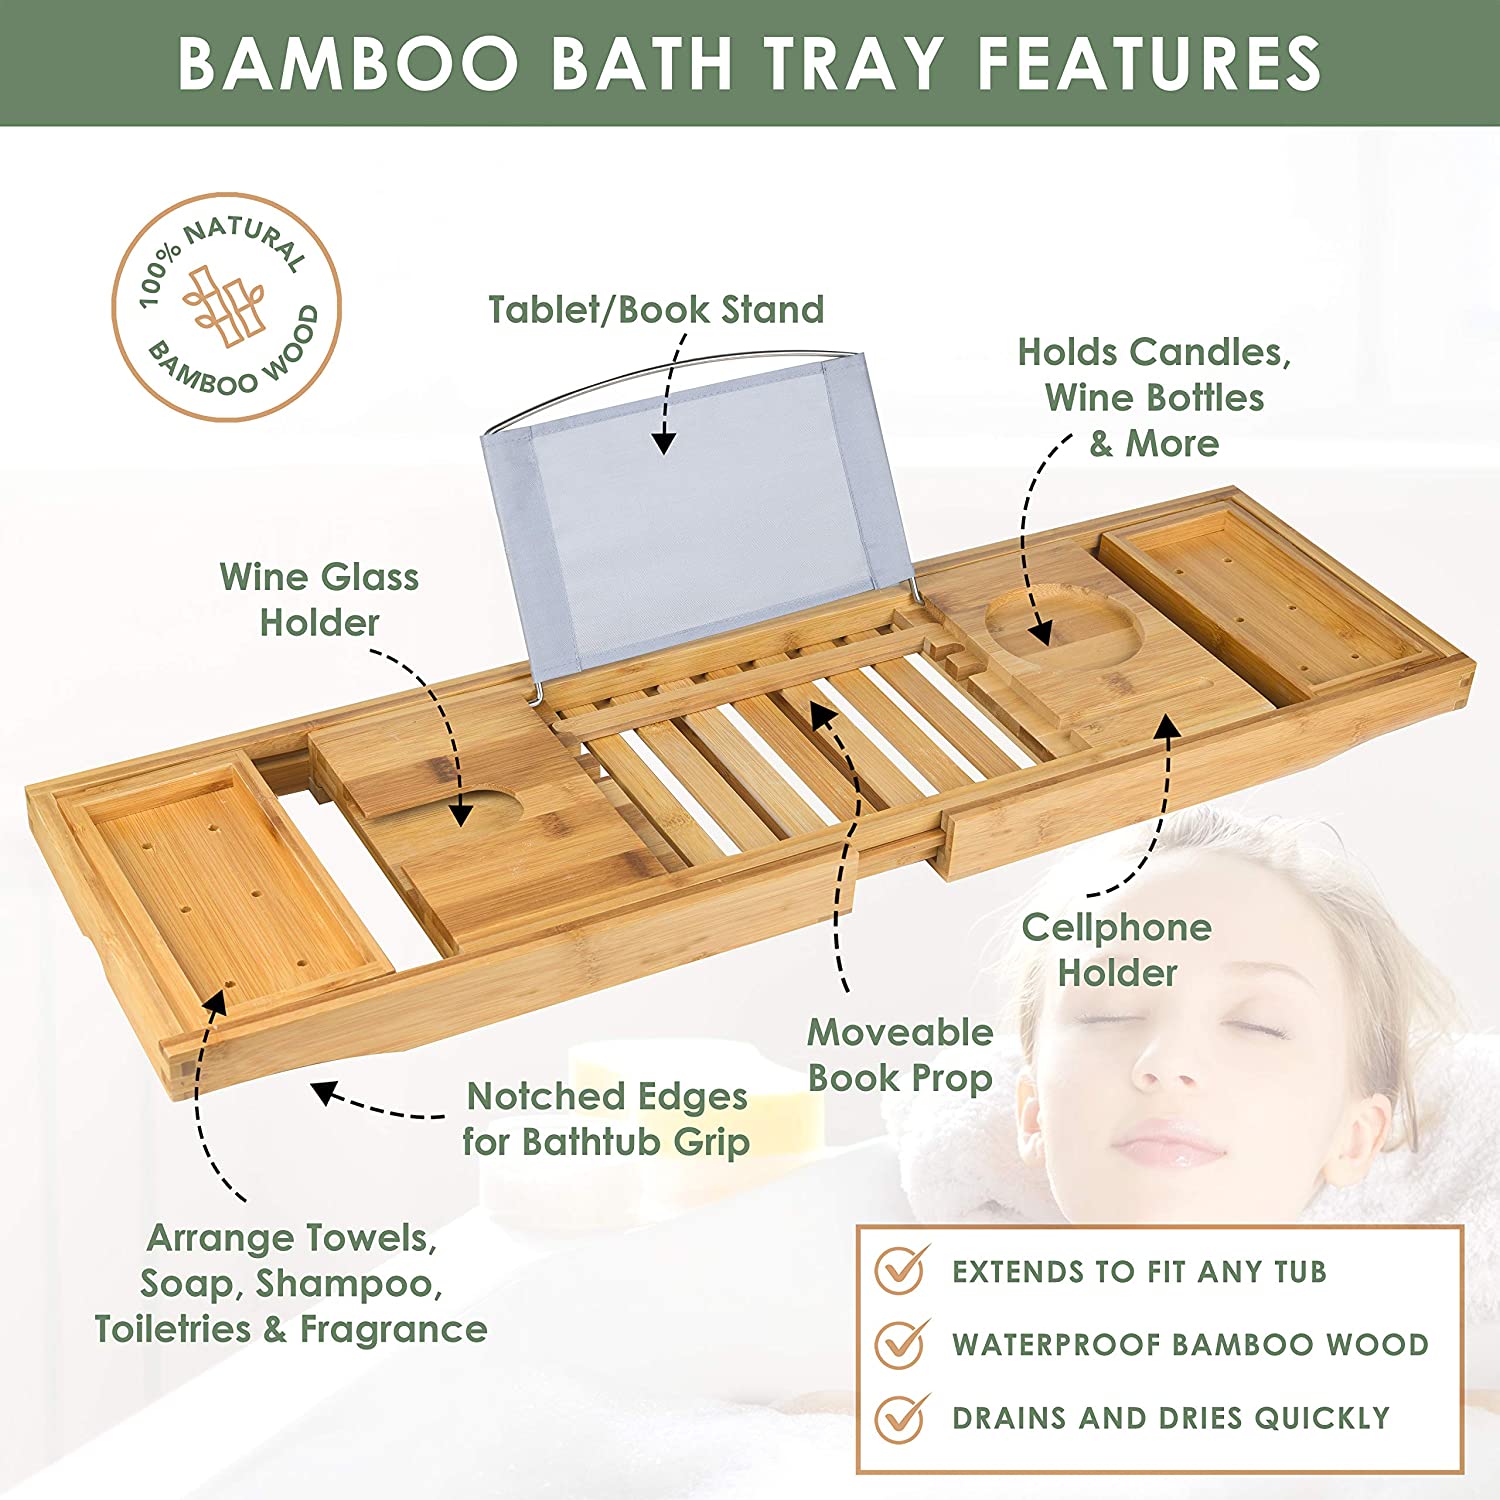 Handmade Bathtub Caddy, Bath Organizer, Natural Wood Bathtub Tray, Bathroom  Caddy, Tablet Holder, Wine Glass Holder & Soap Dish 